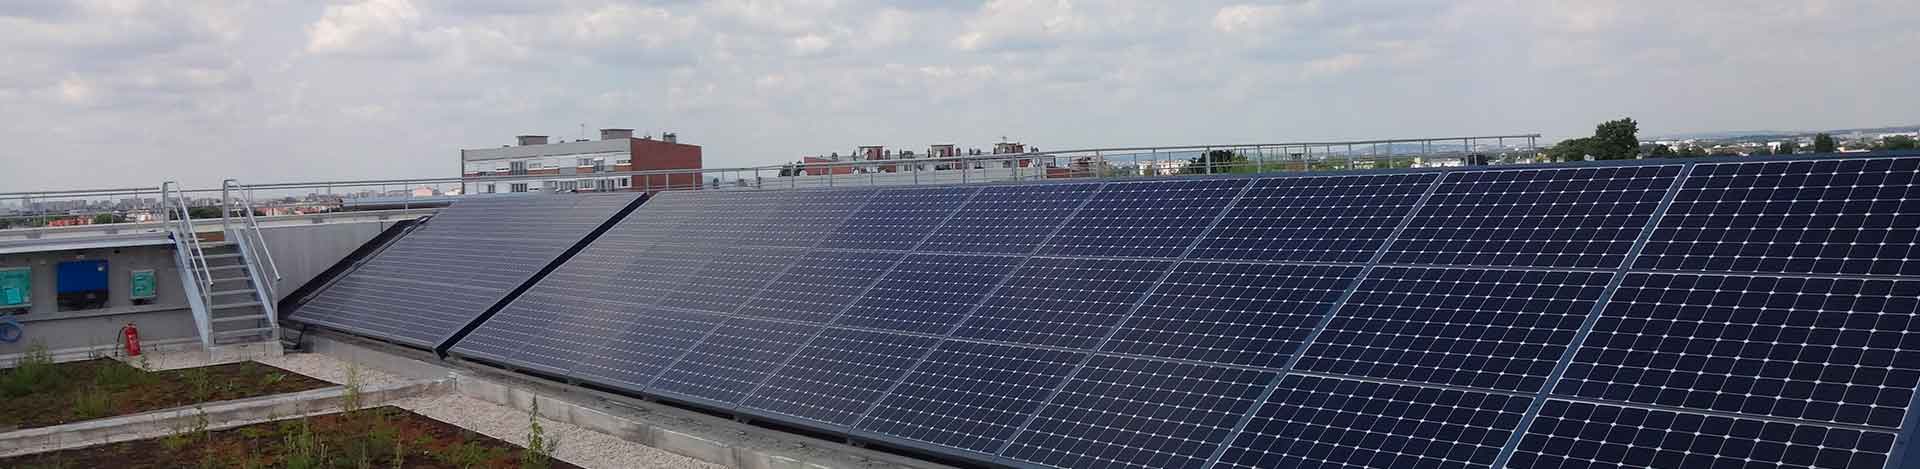 Panneaux solaires : faites appel à Sunvie pour équiper votre toiture